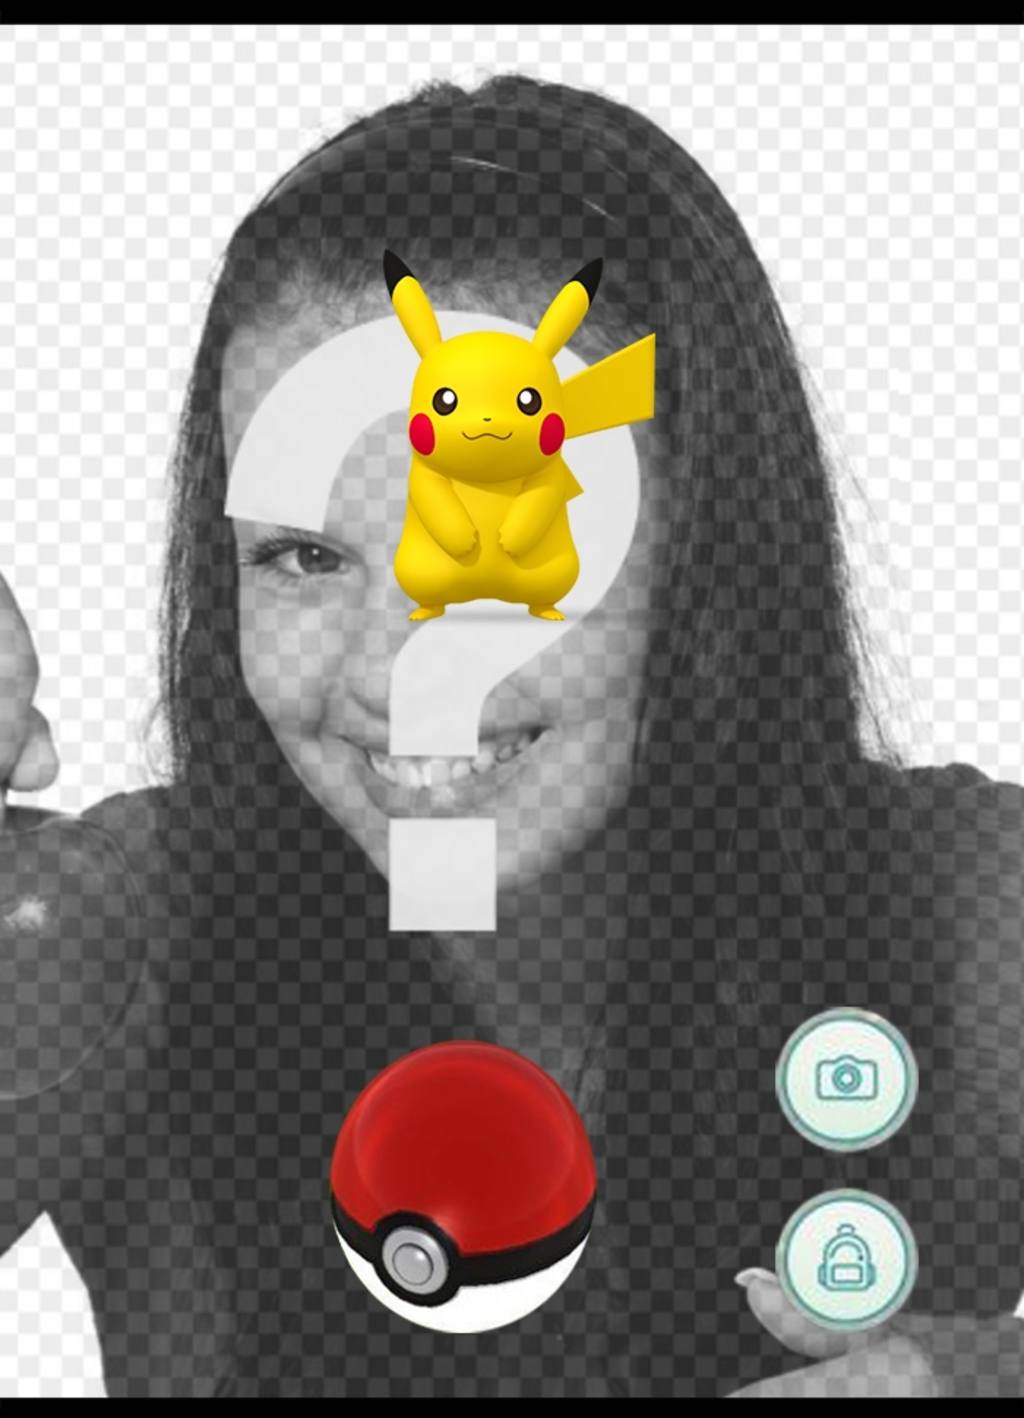 efeito da foto com Pikachu de aplicação Pokemon Go para colocar sua foto ..